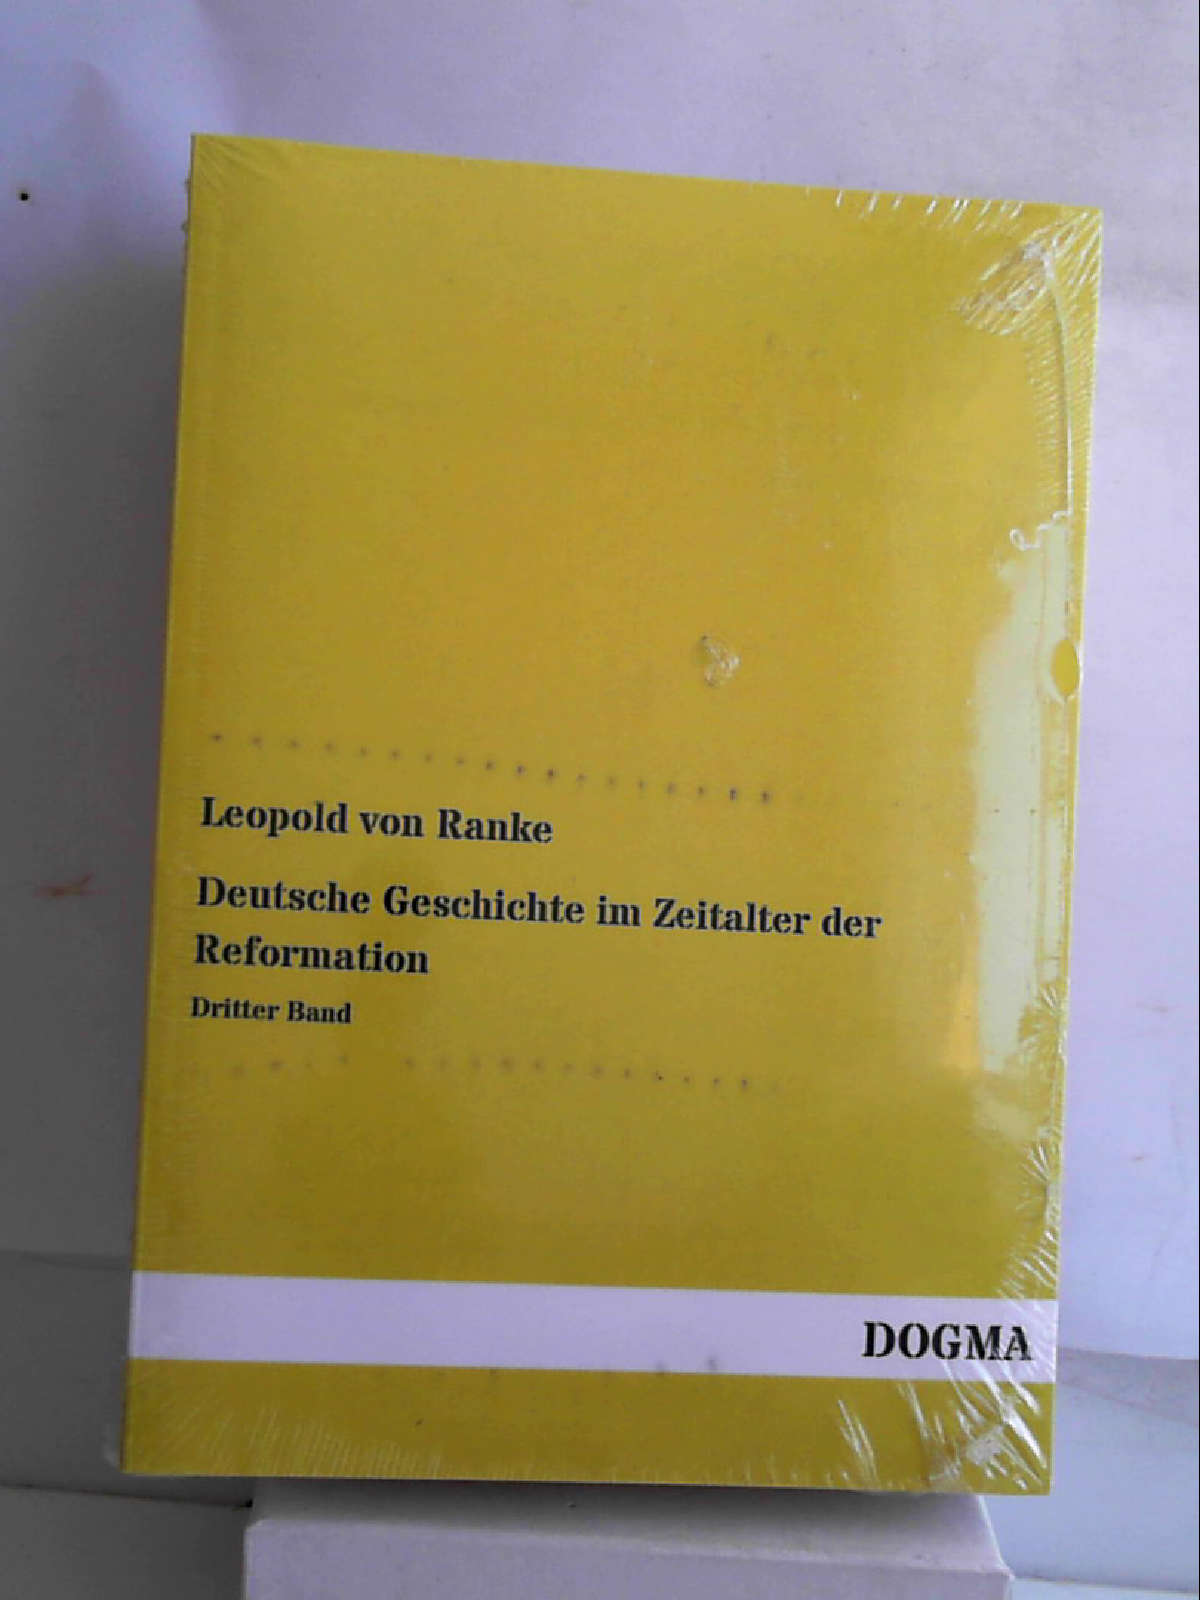 Deutsche Geschichte im Zeitalter der Reformation: Band 3 [Paperback] [Dec 30, 2013] Ranke, Leopold von - Leopold von Ranke